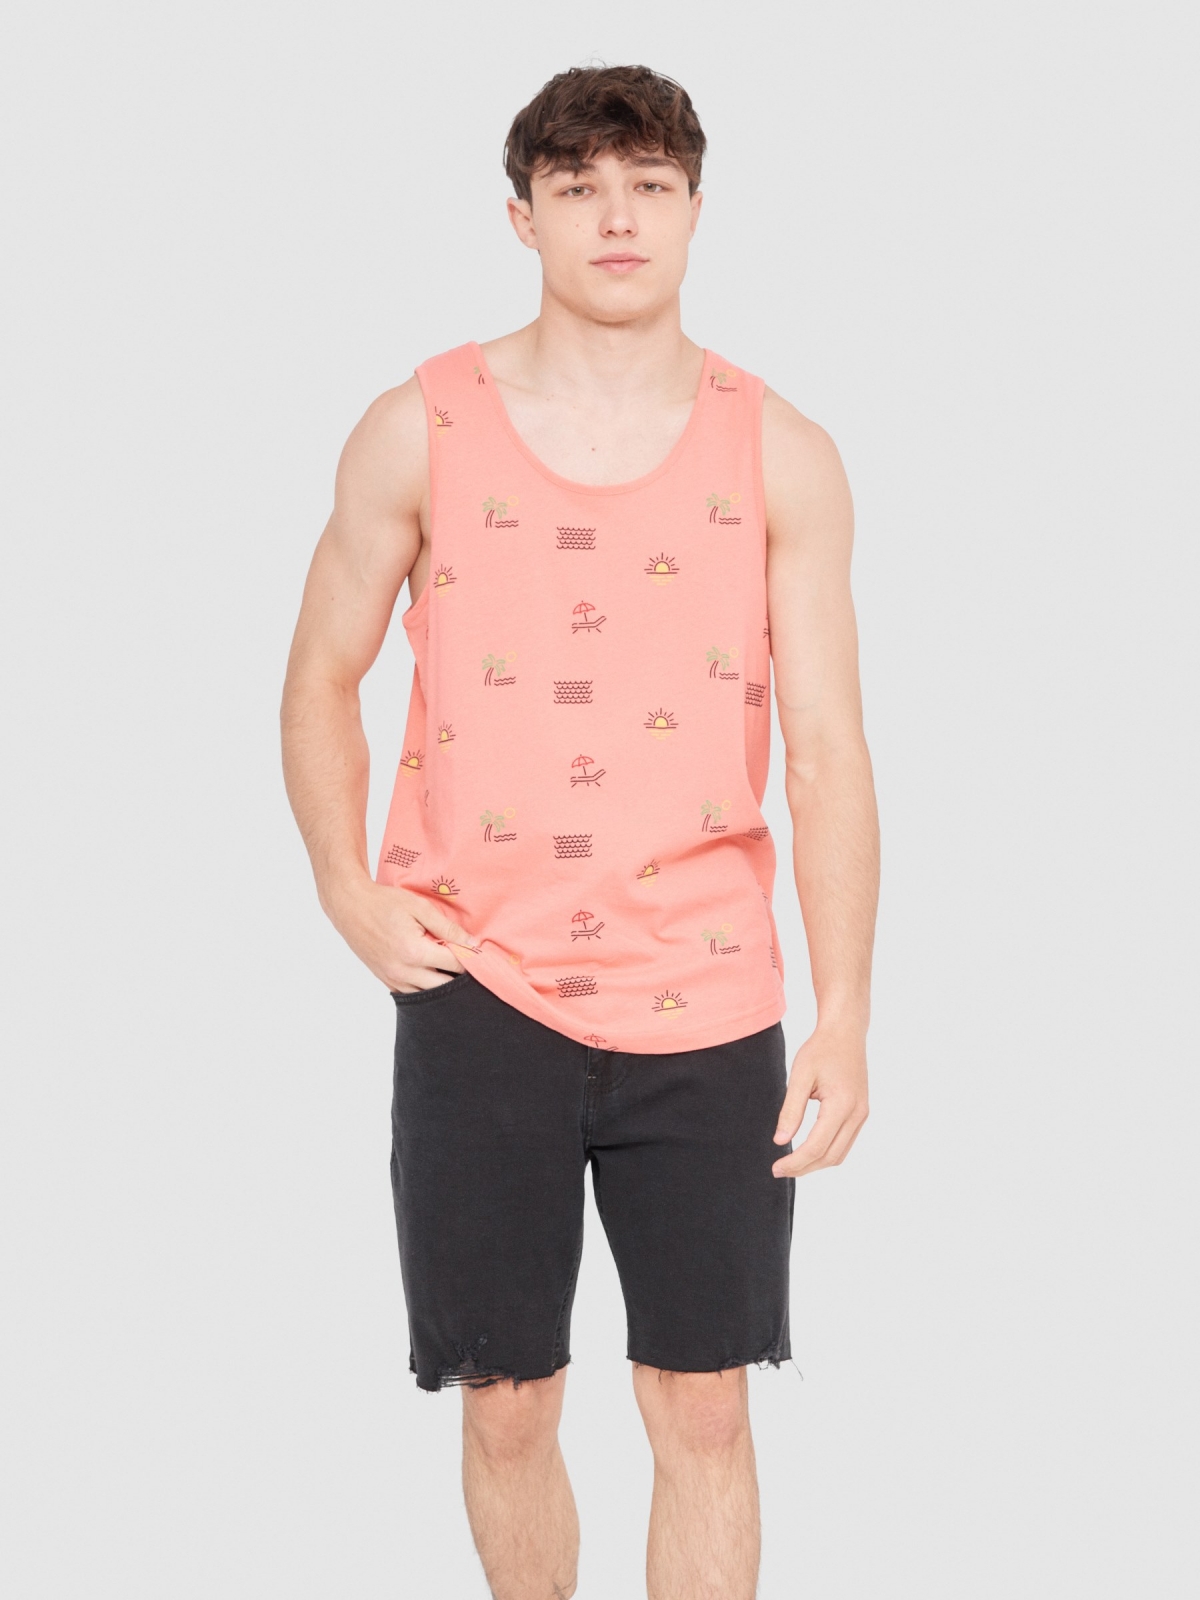 Camiseta de tirantes tropical rosa vista media frontal